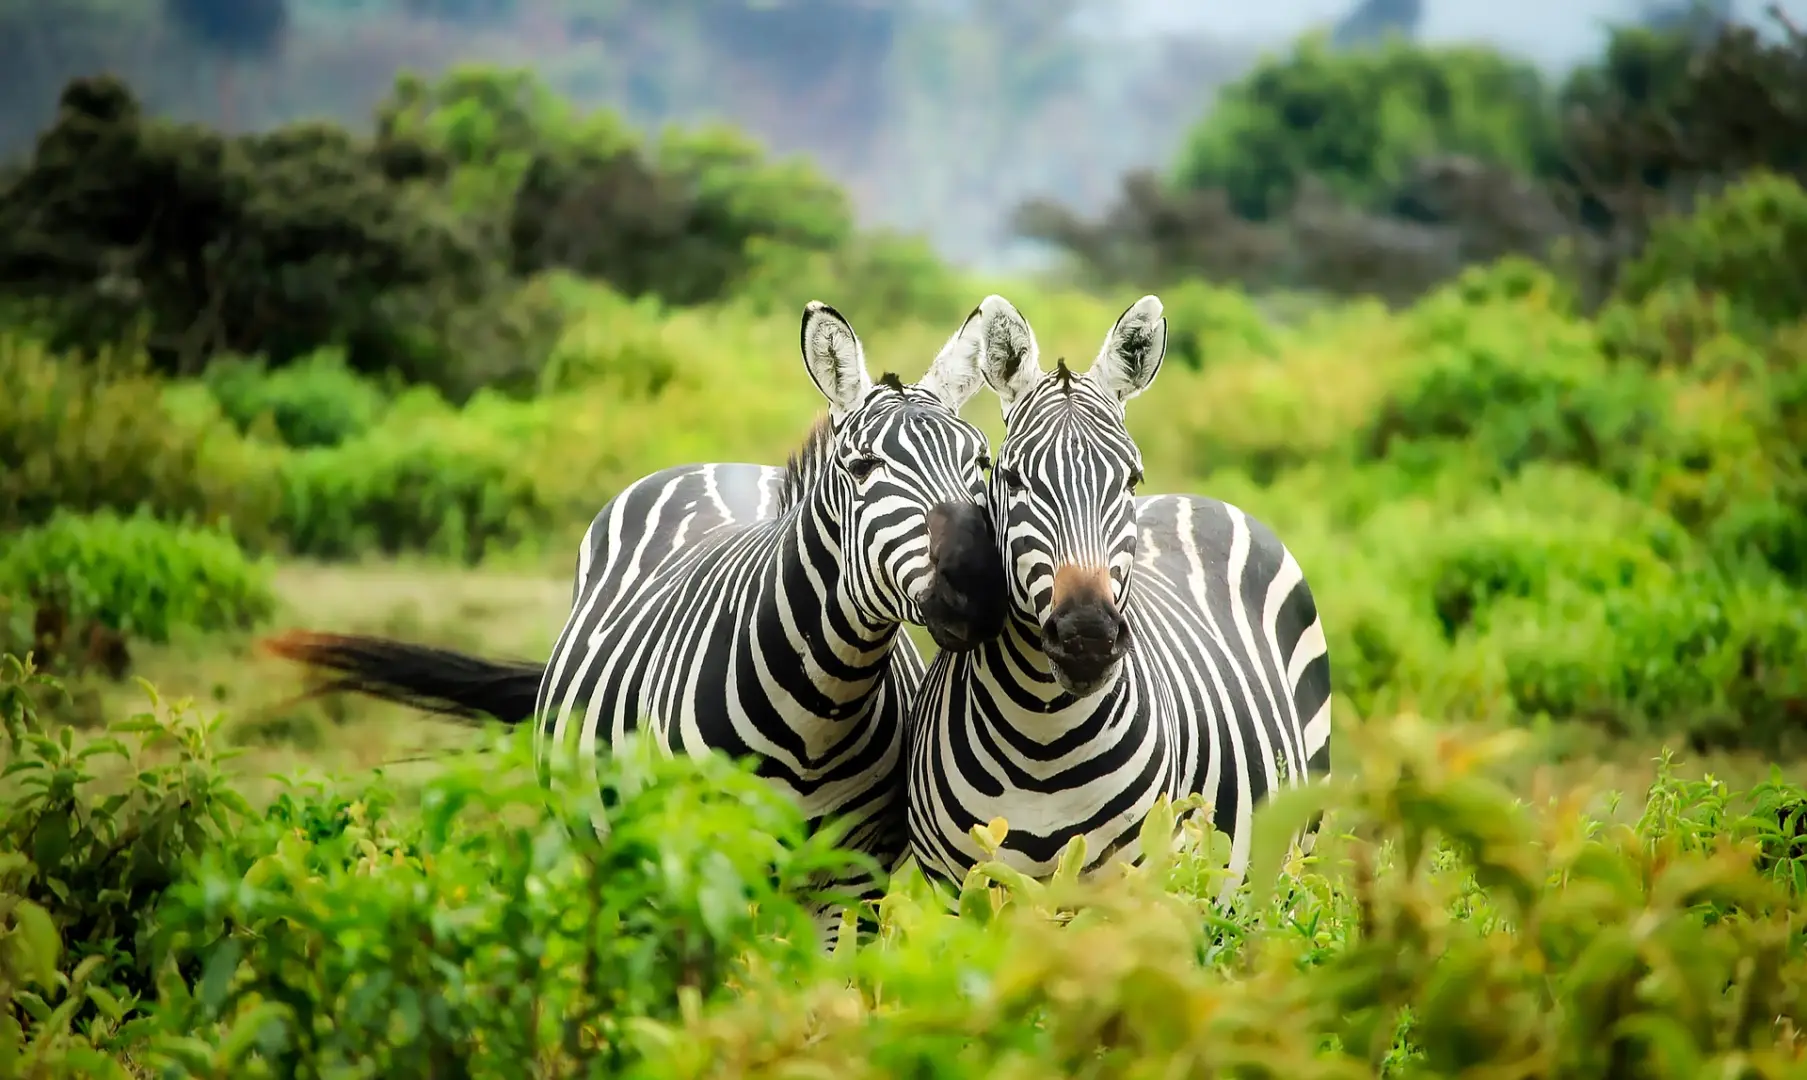 Ven con nosotros a vivir la aventura de tu vida. Un viaje enriquecedor para descubrir las maravillas de Tanzania en grupo. Un safari solidario diferente